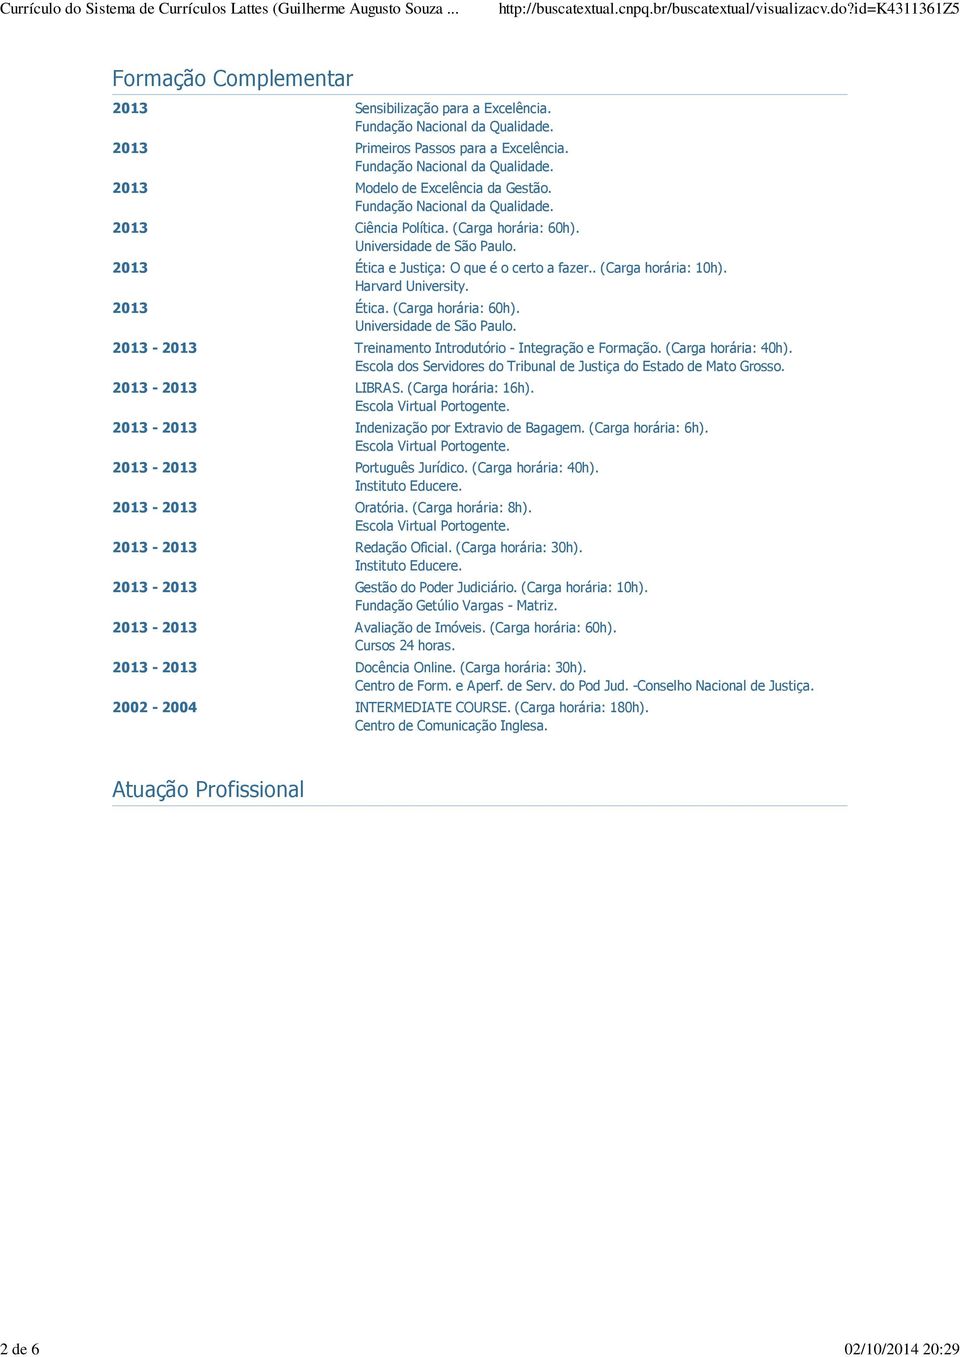 2013 Ética. (Carga horária: 60h). Universidade de São Paulo. 2013-2013 Treinamento Introdutório - Integração e Formação. (Carga horária: 40h).